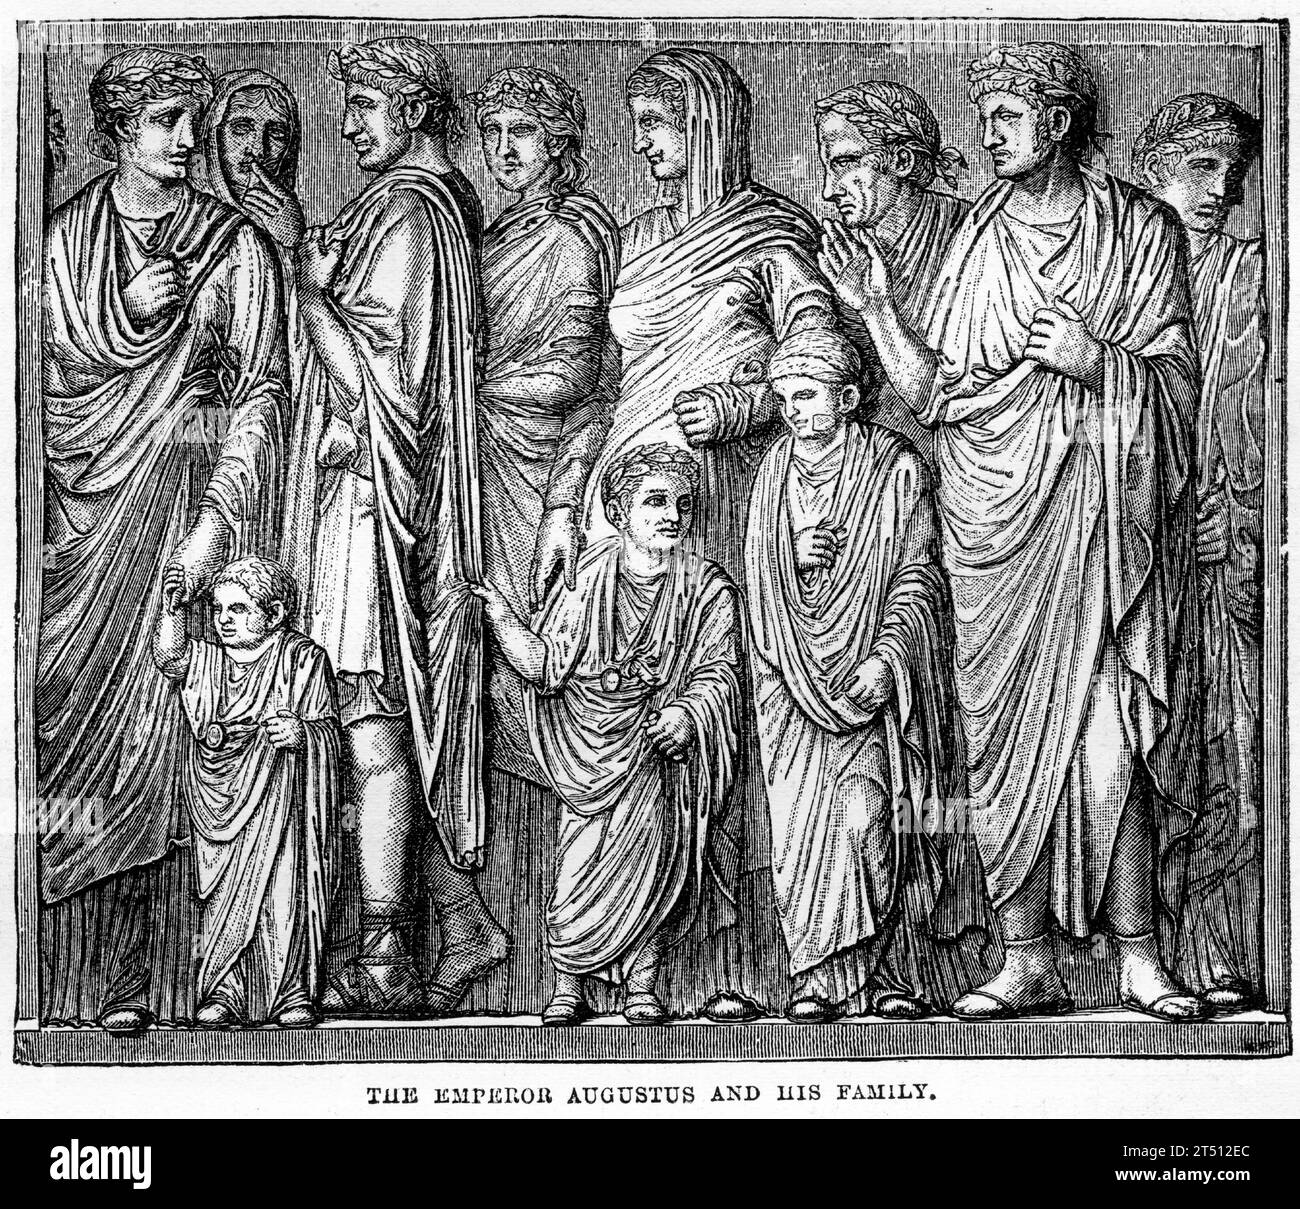 Incisione dell'imperatore Augusto e della sua famiglia, pubblicata intorno al 1887 Foto Stock